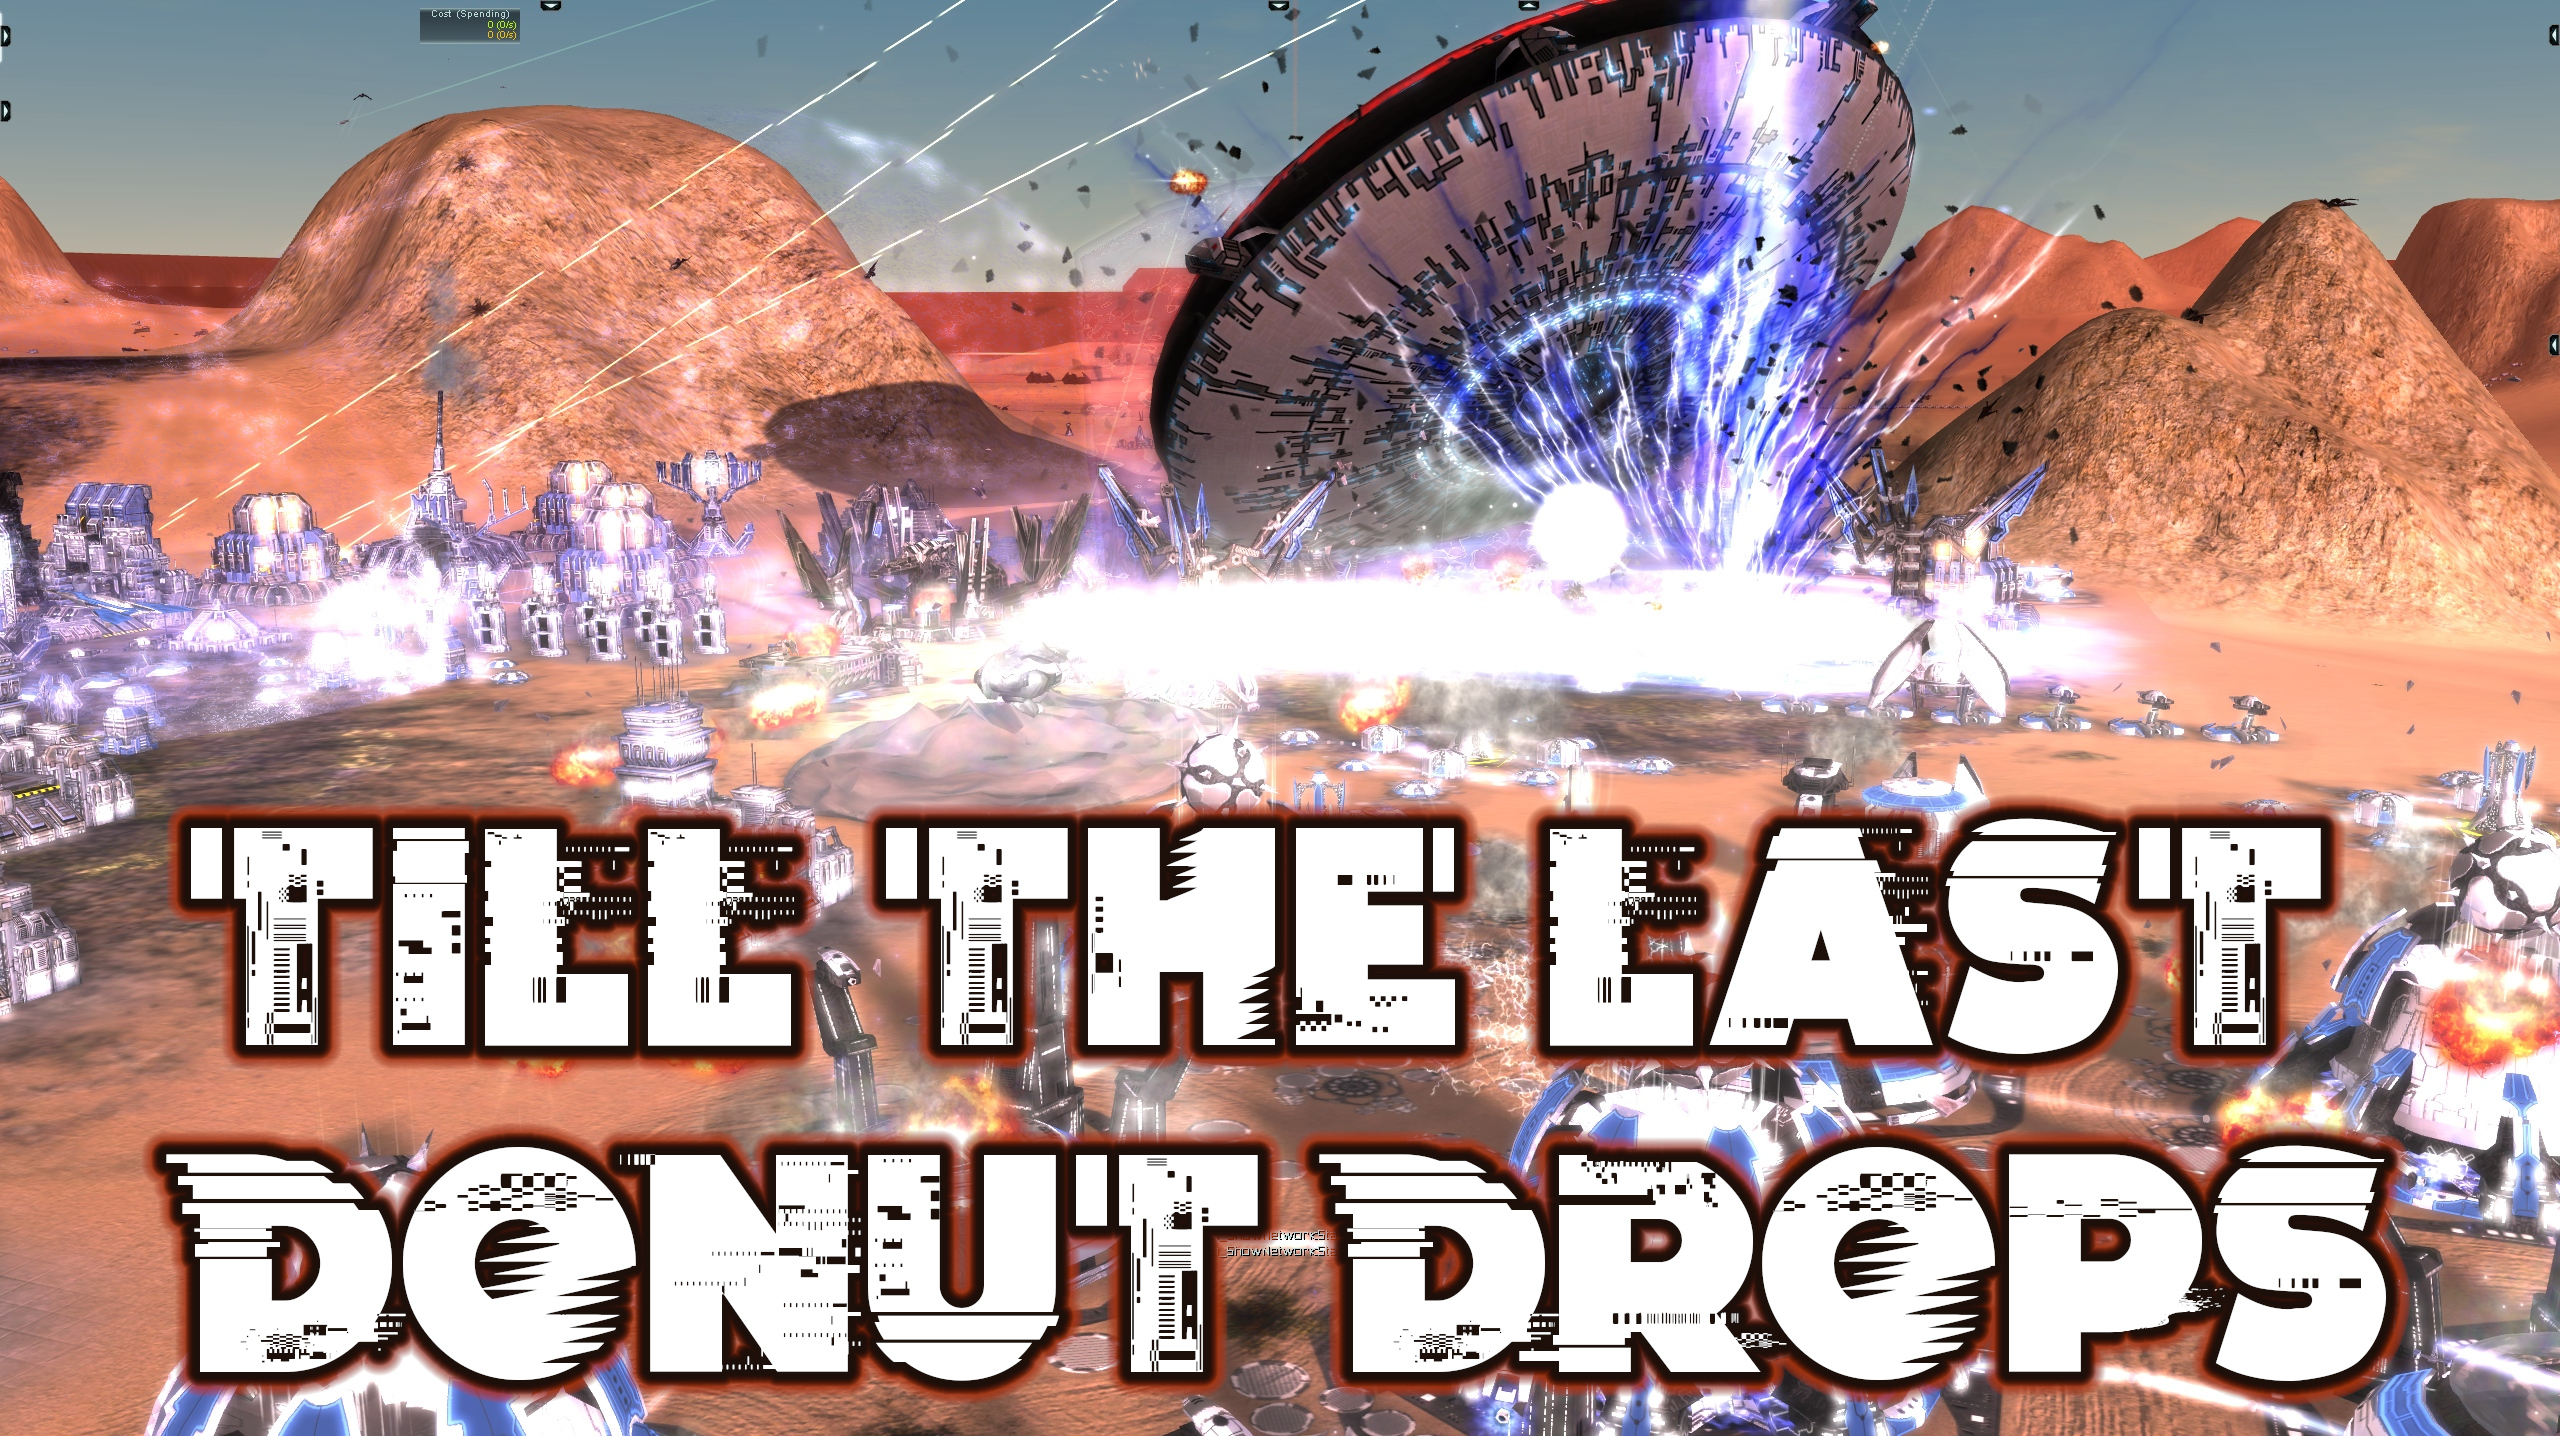 Cast-Till the Last Donut Drops